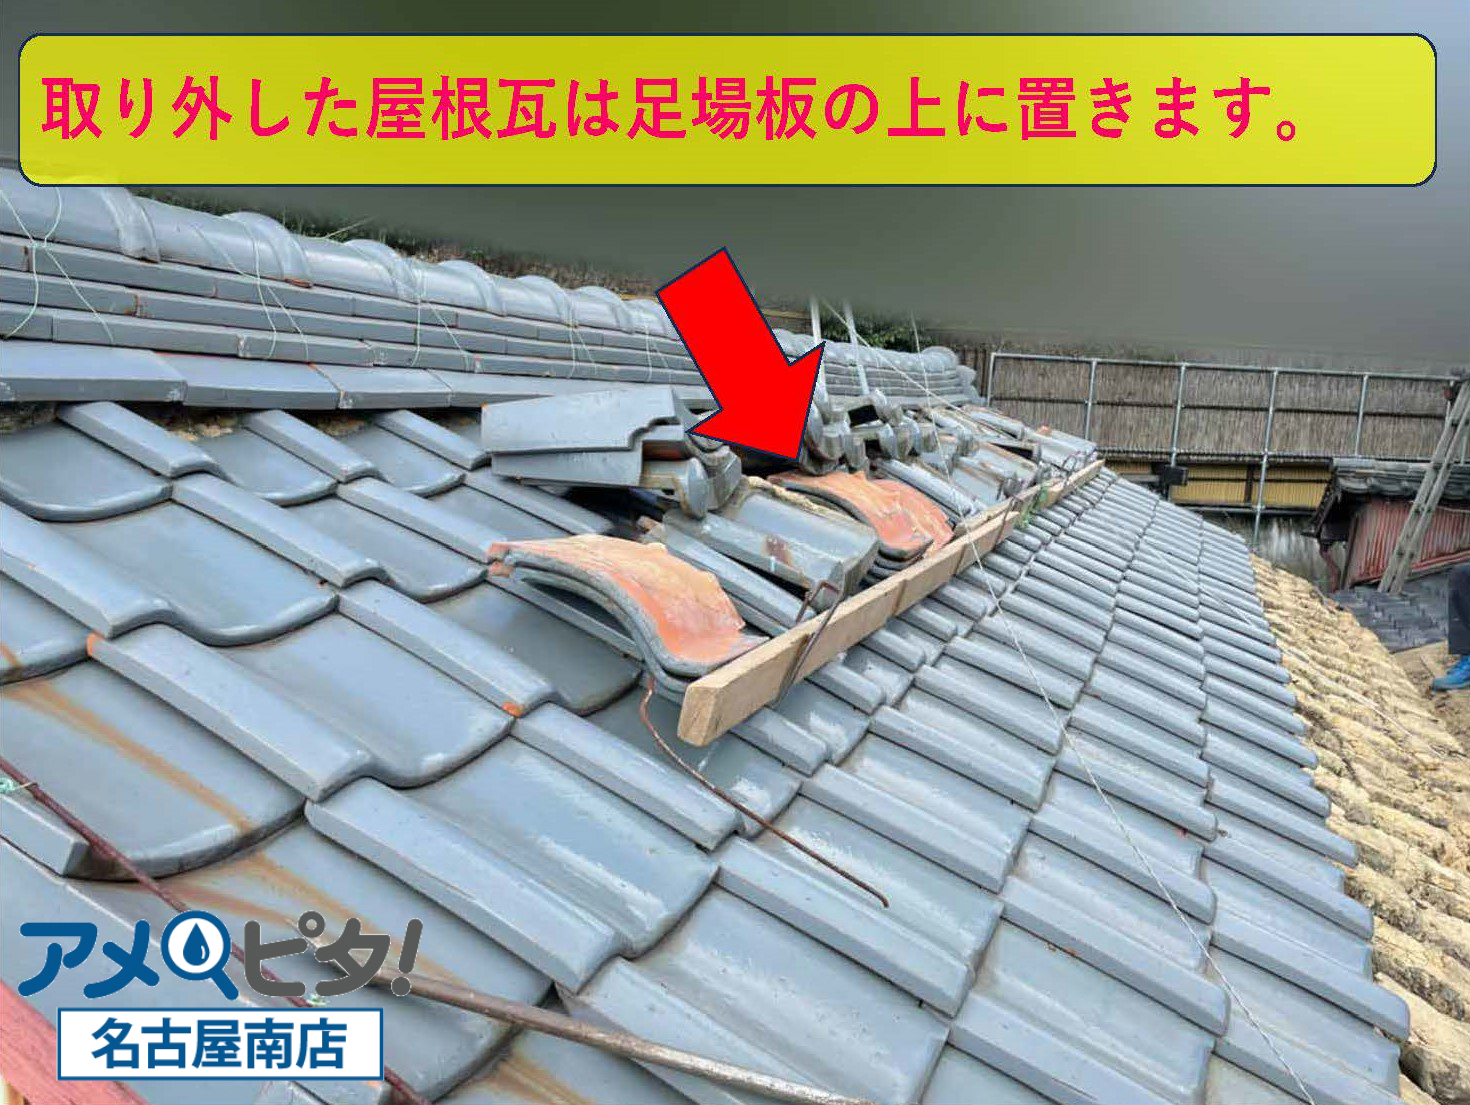 取り外した屋根瓦を足場板においておきます